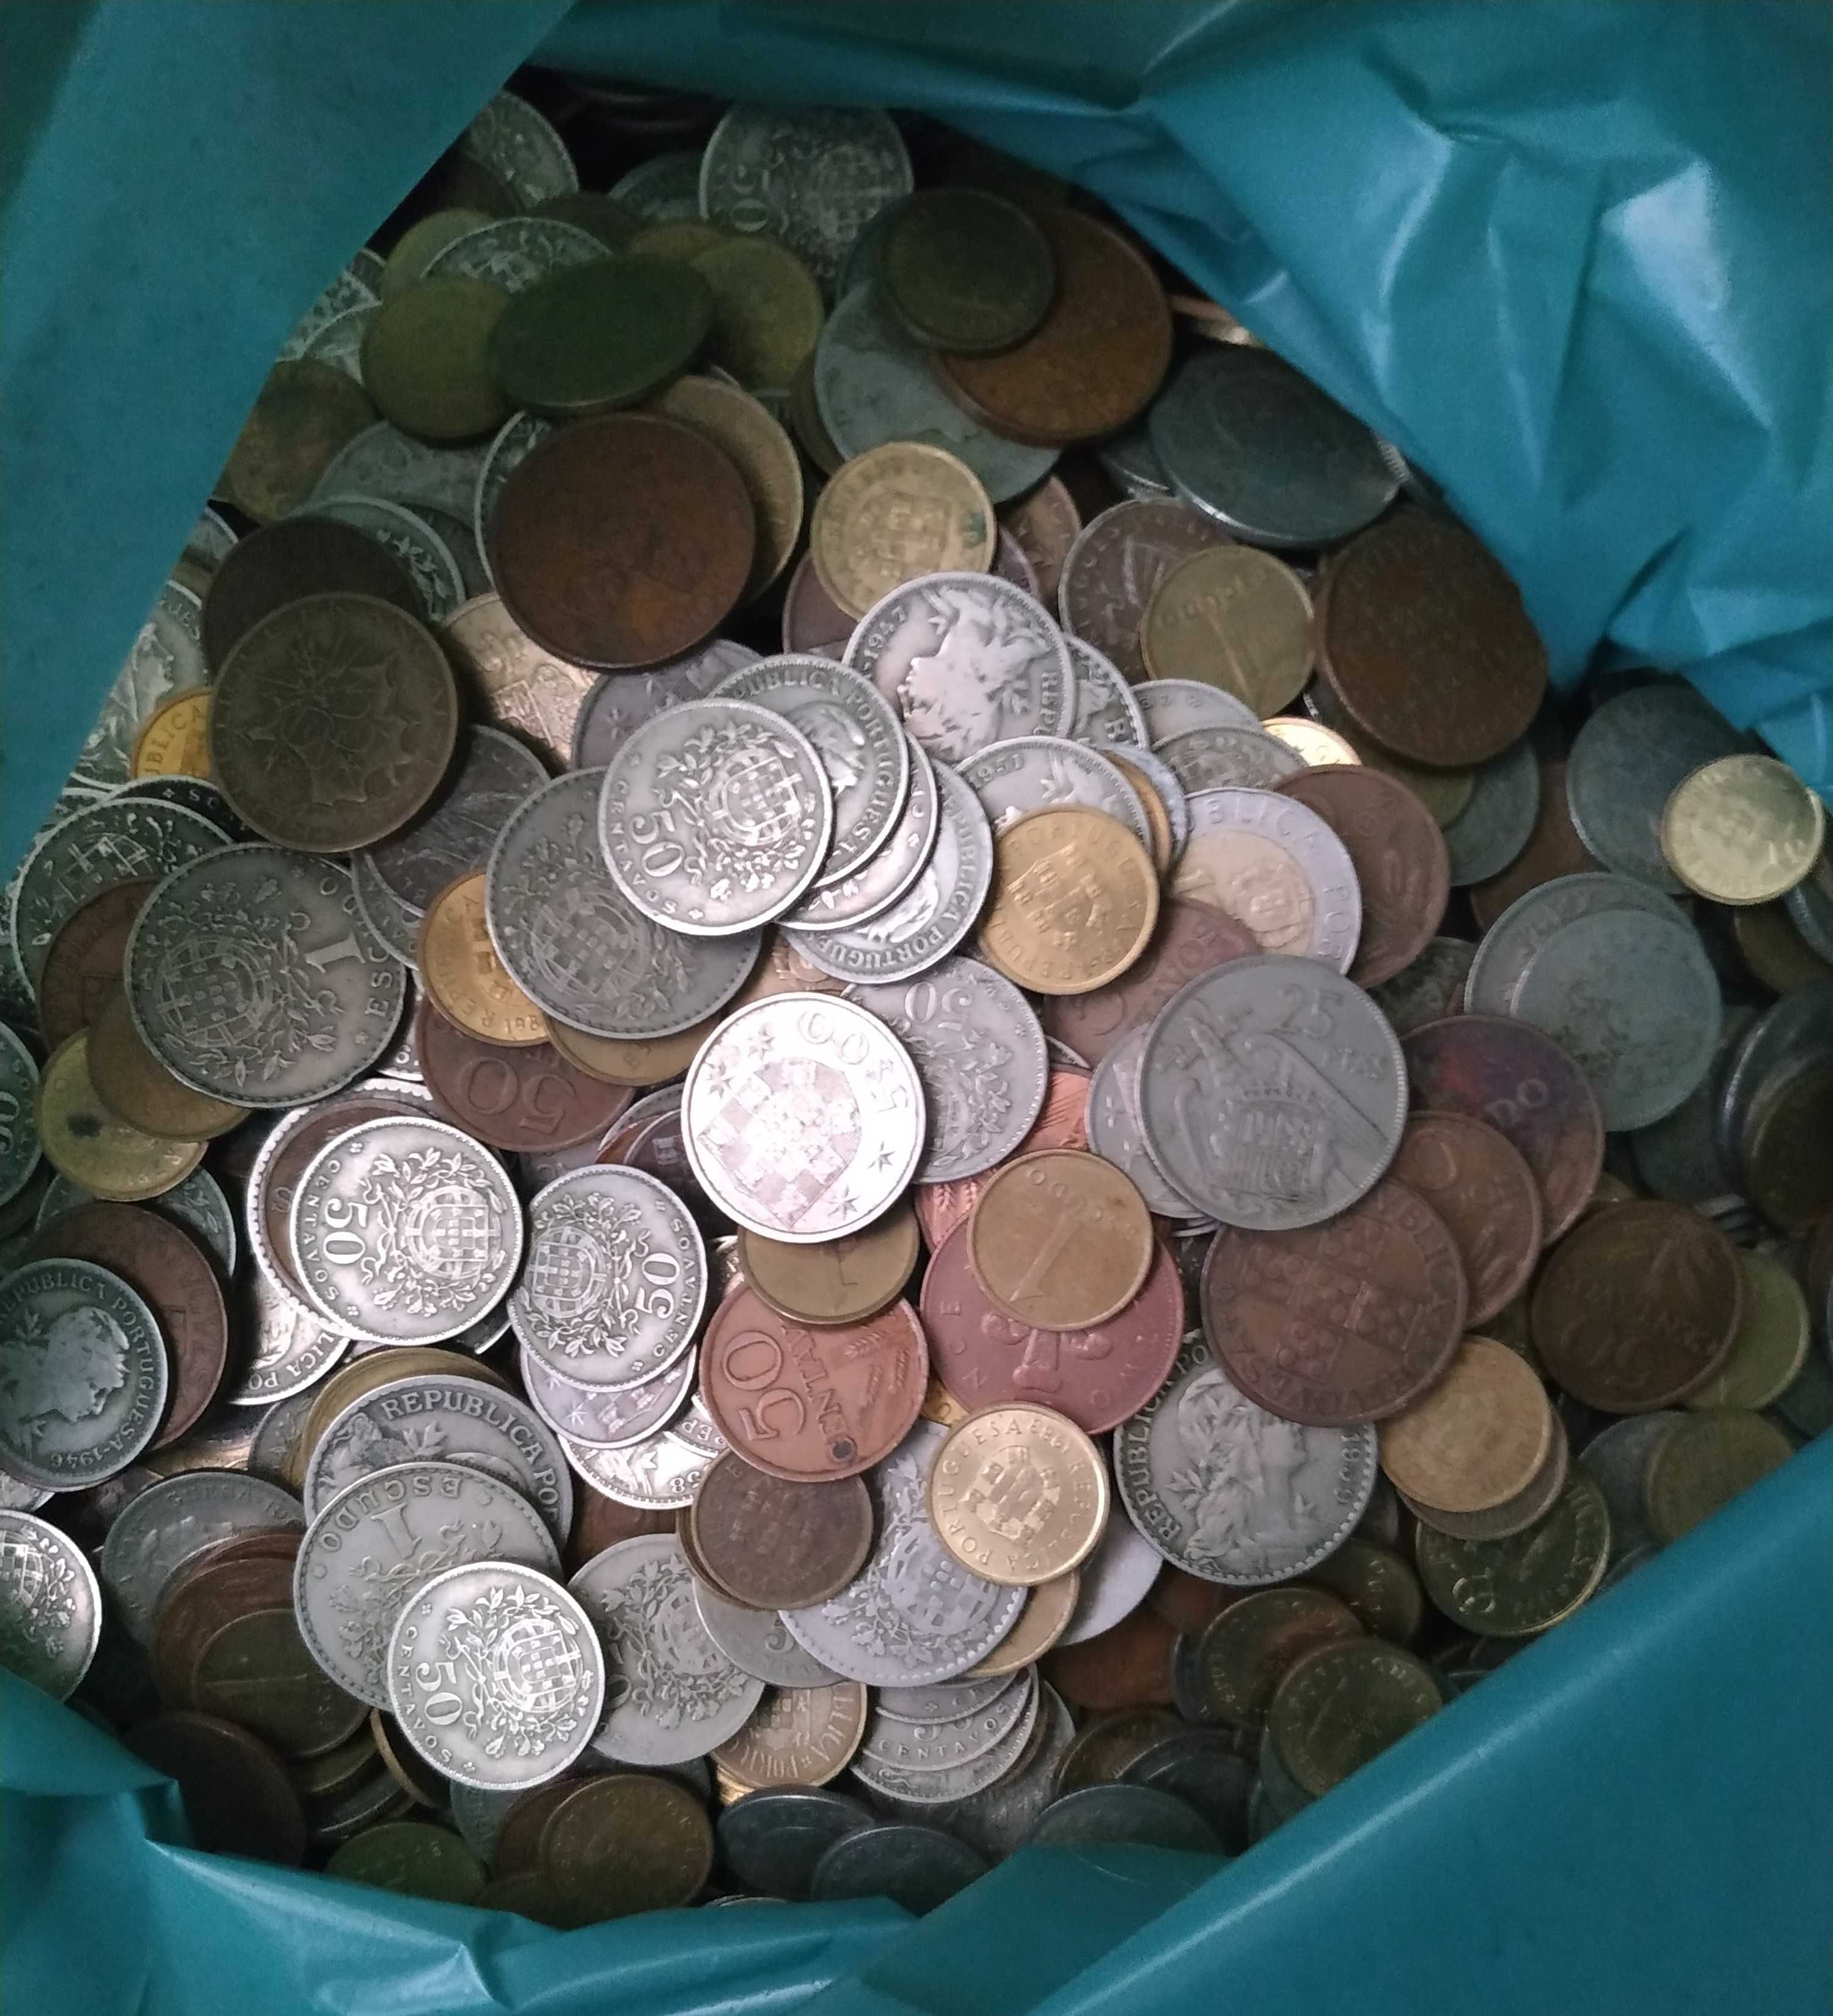 Vendo moedas ao kilo (5€/kg)